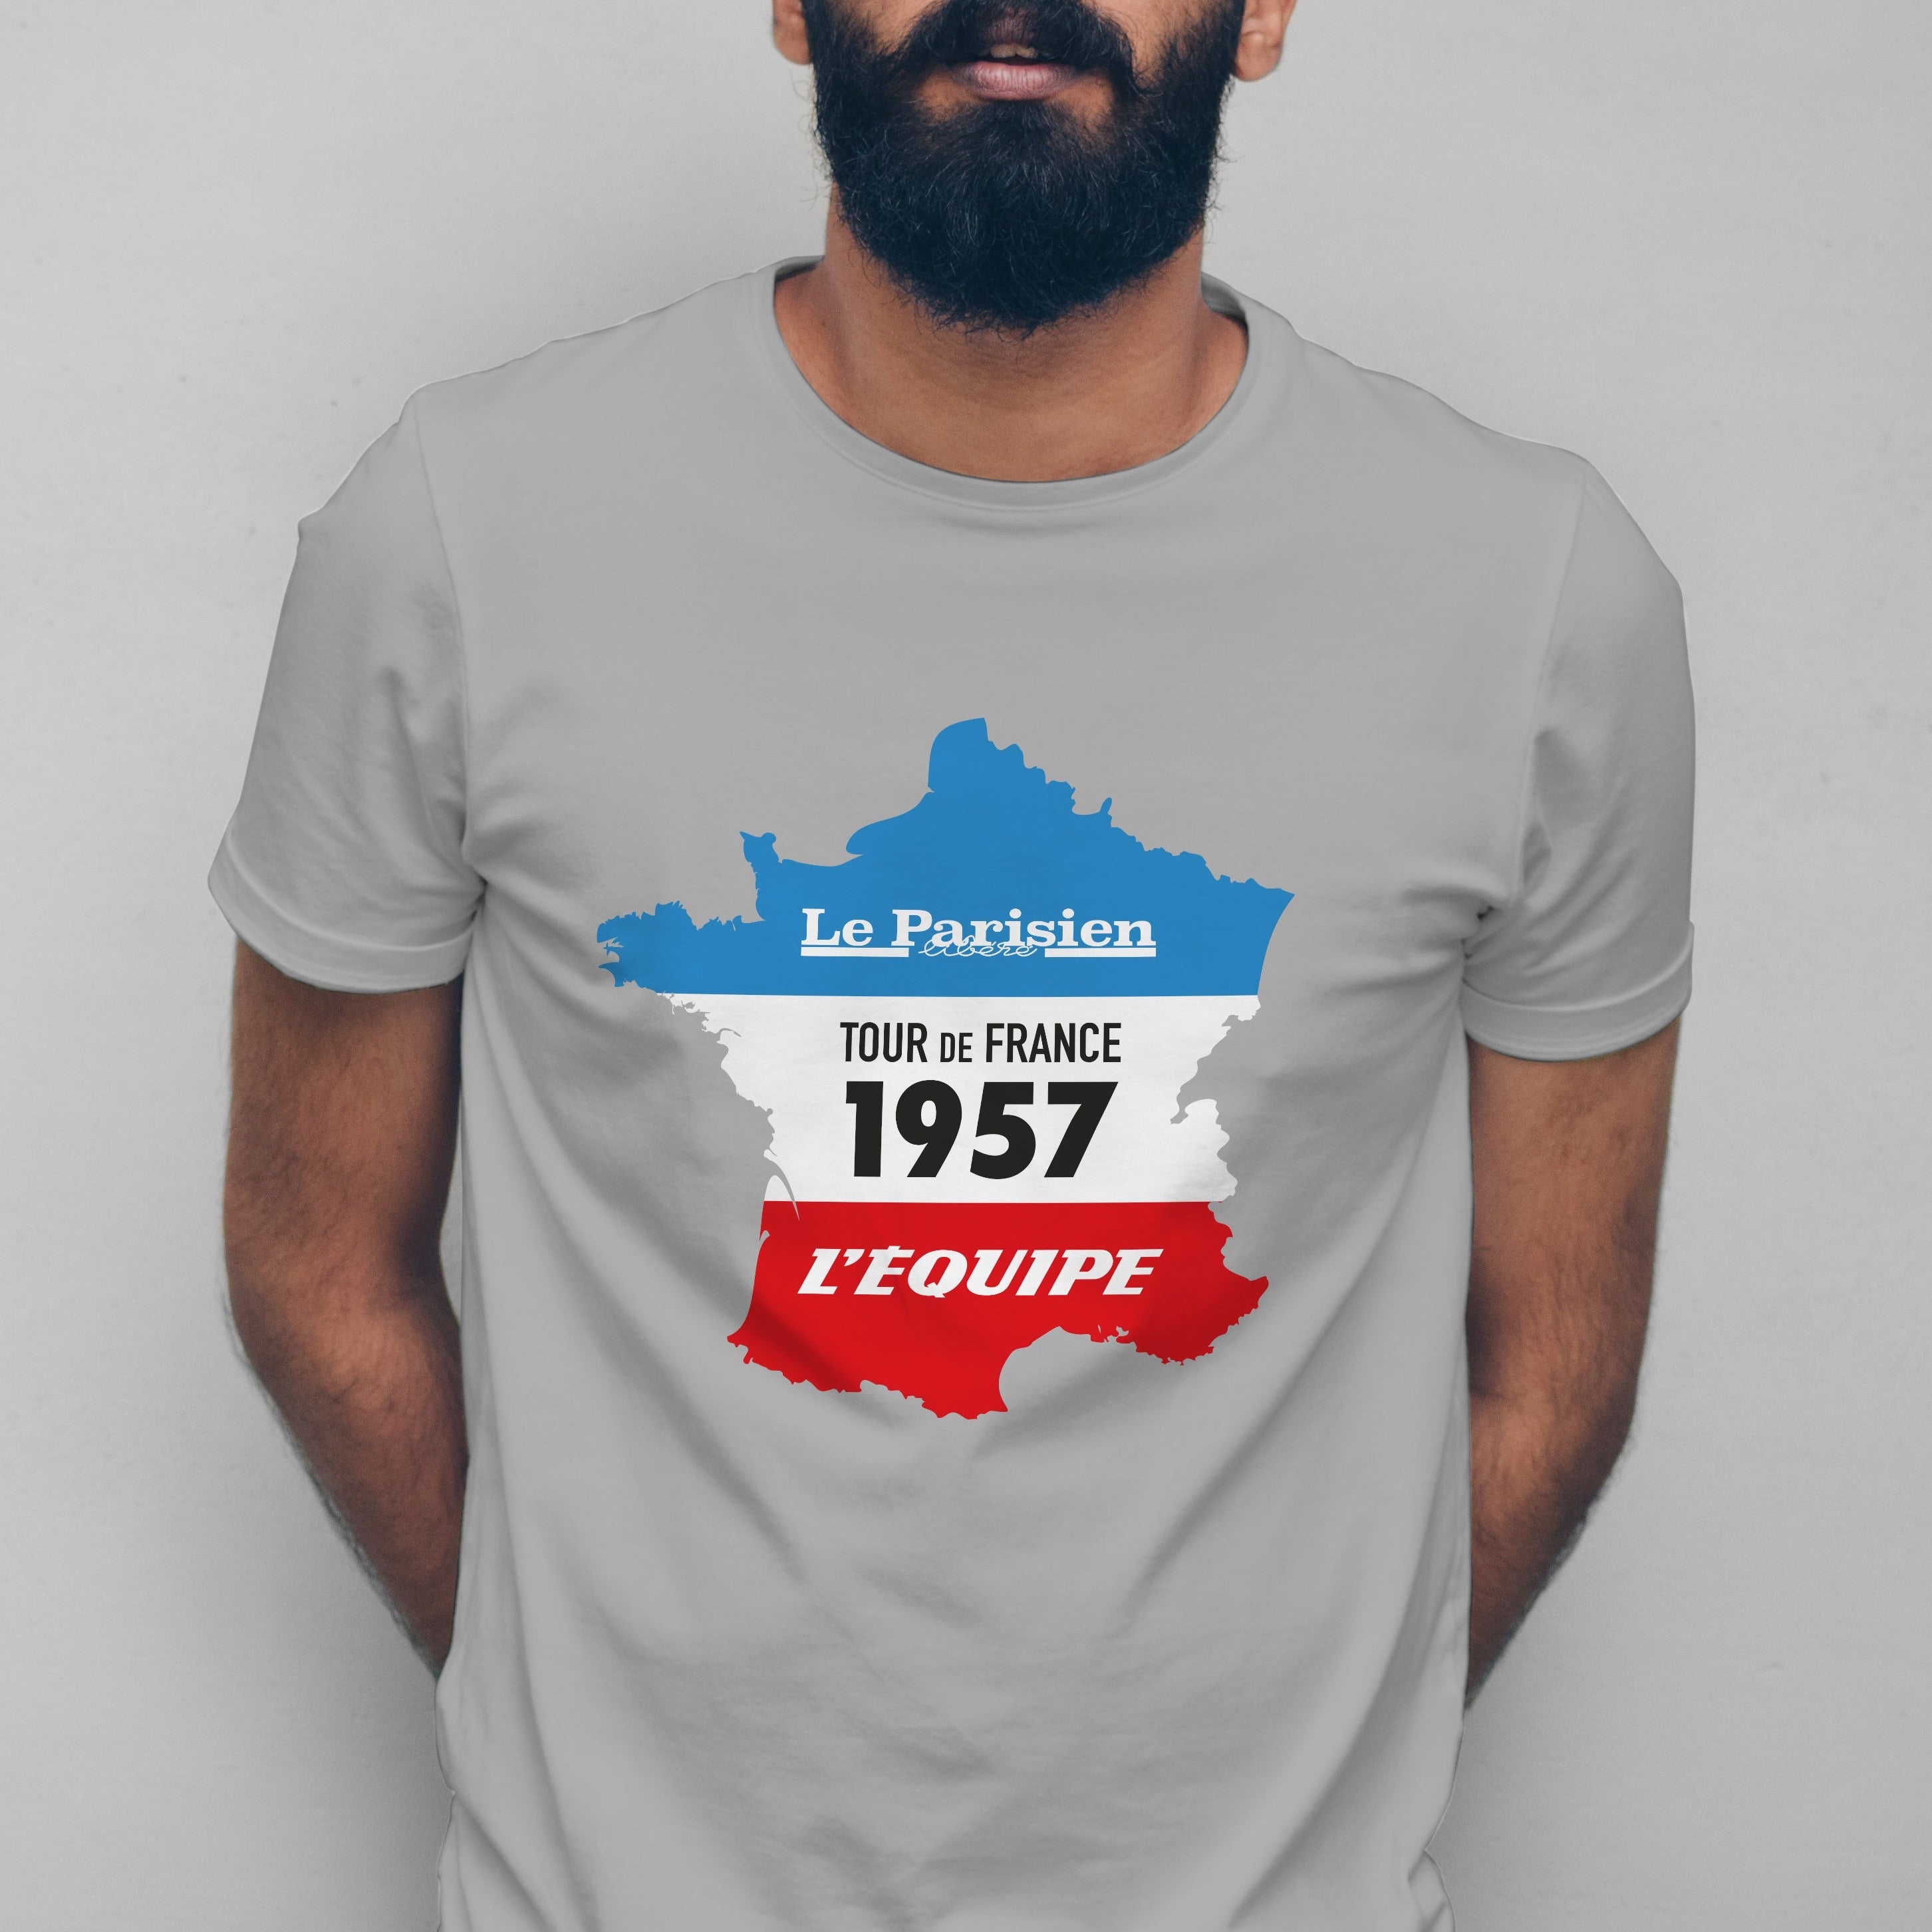 Vintage Tour de France Sign 1957 - Limited Edition T-Shirt